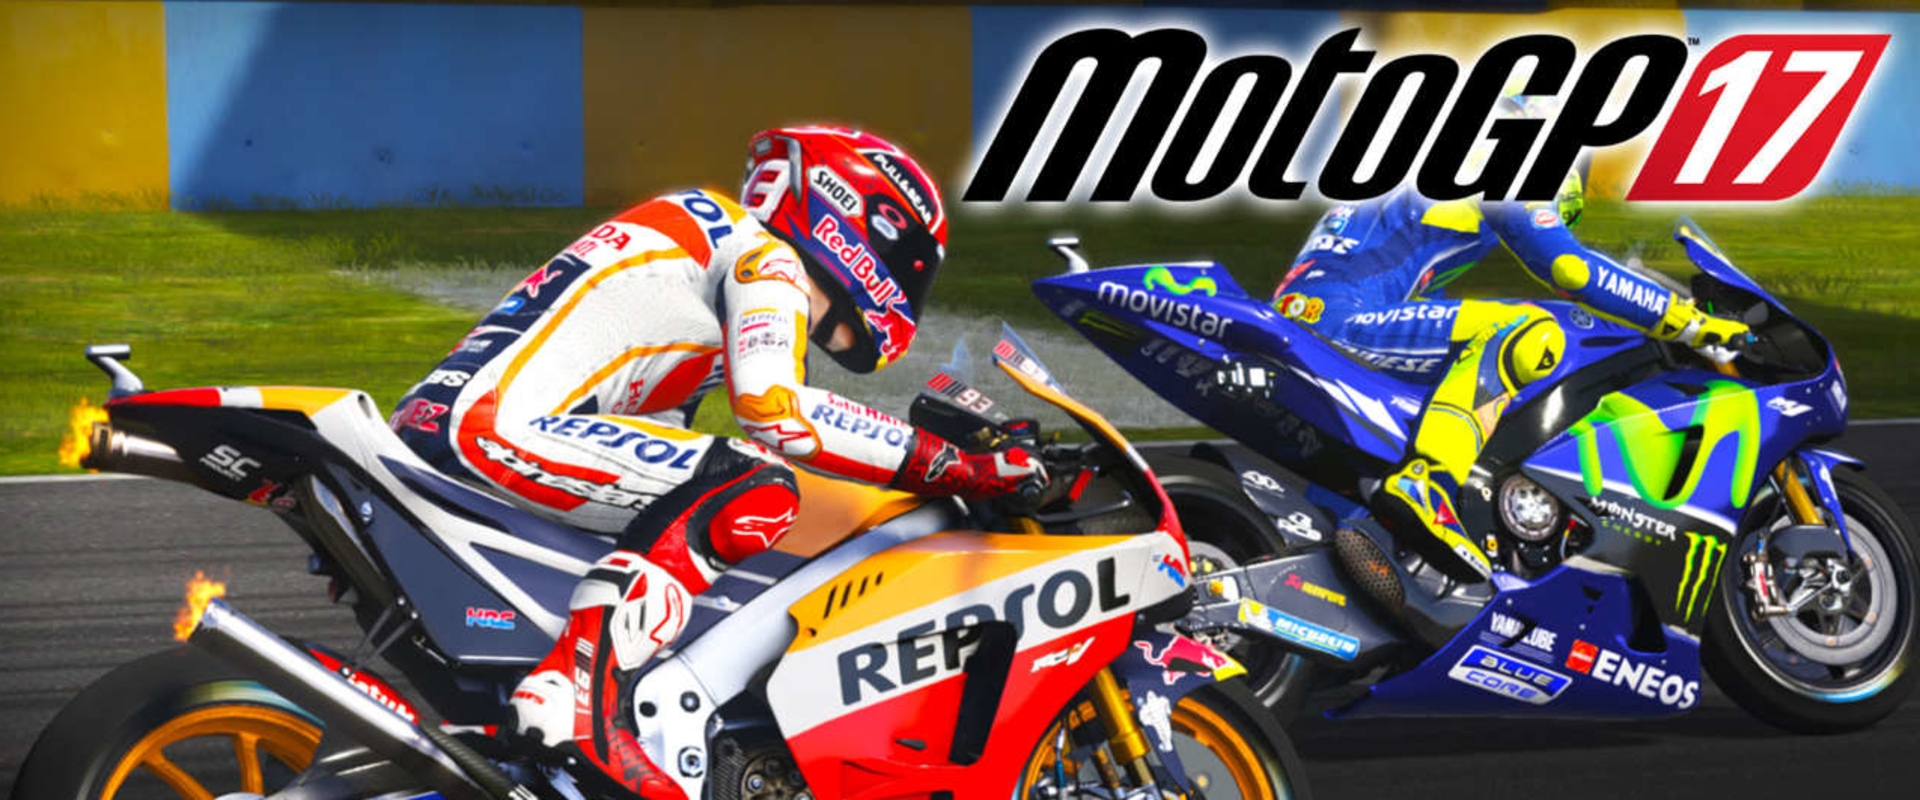 Elektronikus fokozatba kapcsol a MotoGP17, jön az e-sport bajnokságuk